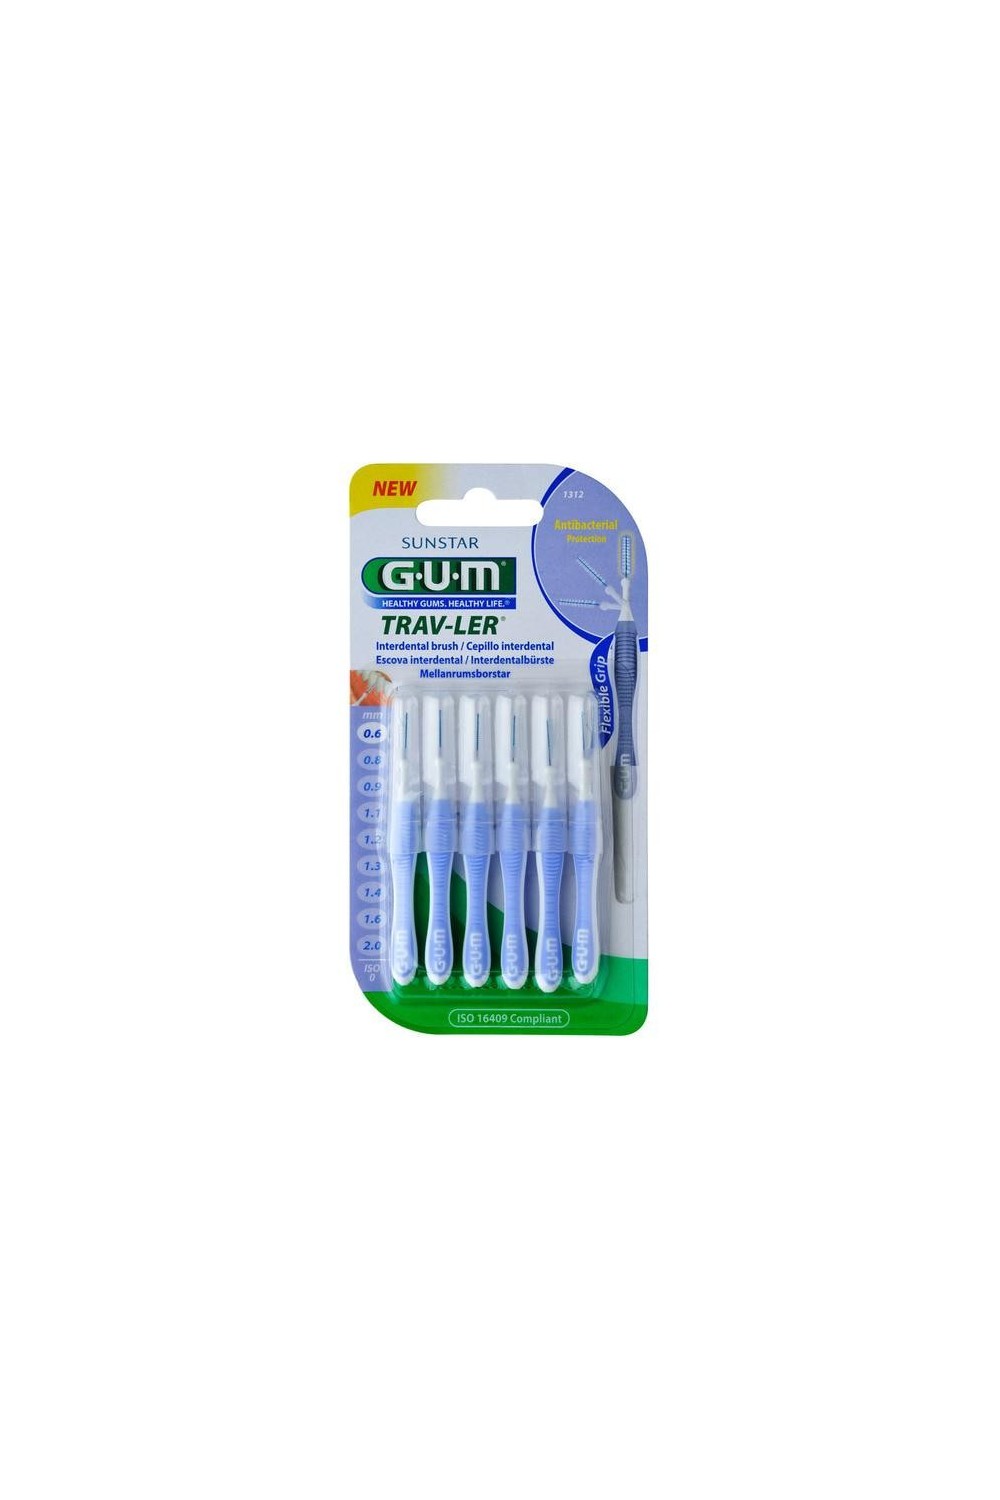 Sunstar Gum Interdental Brush 0,6mm Trav-Ler 6 Uds